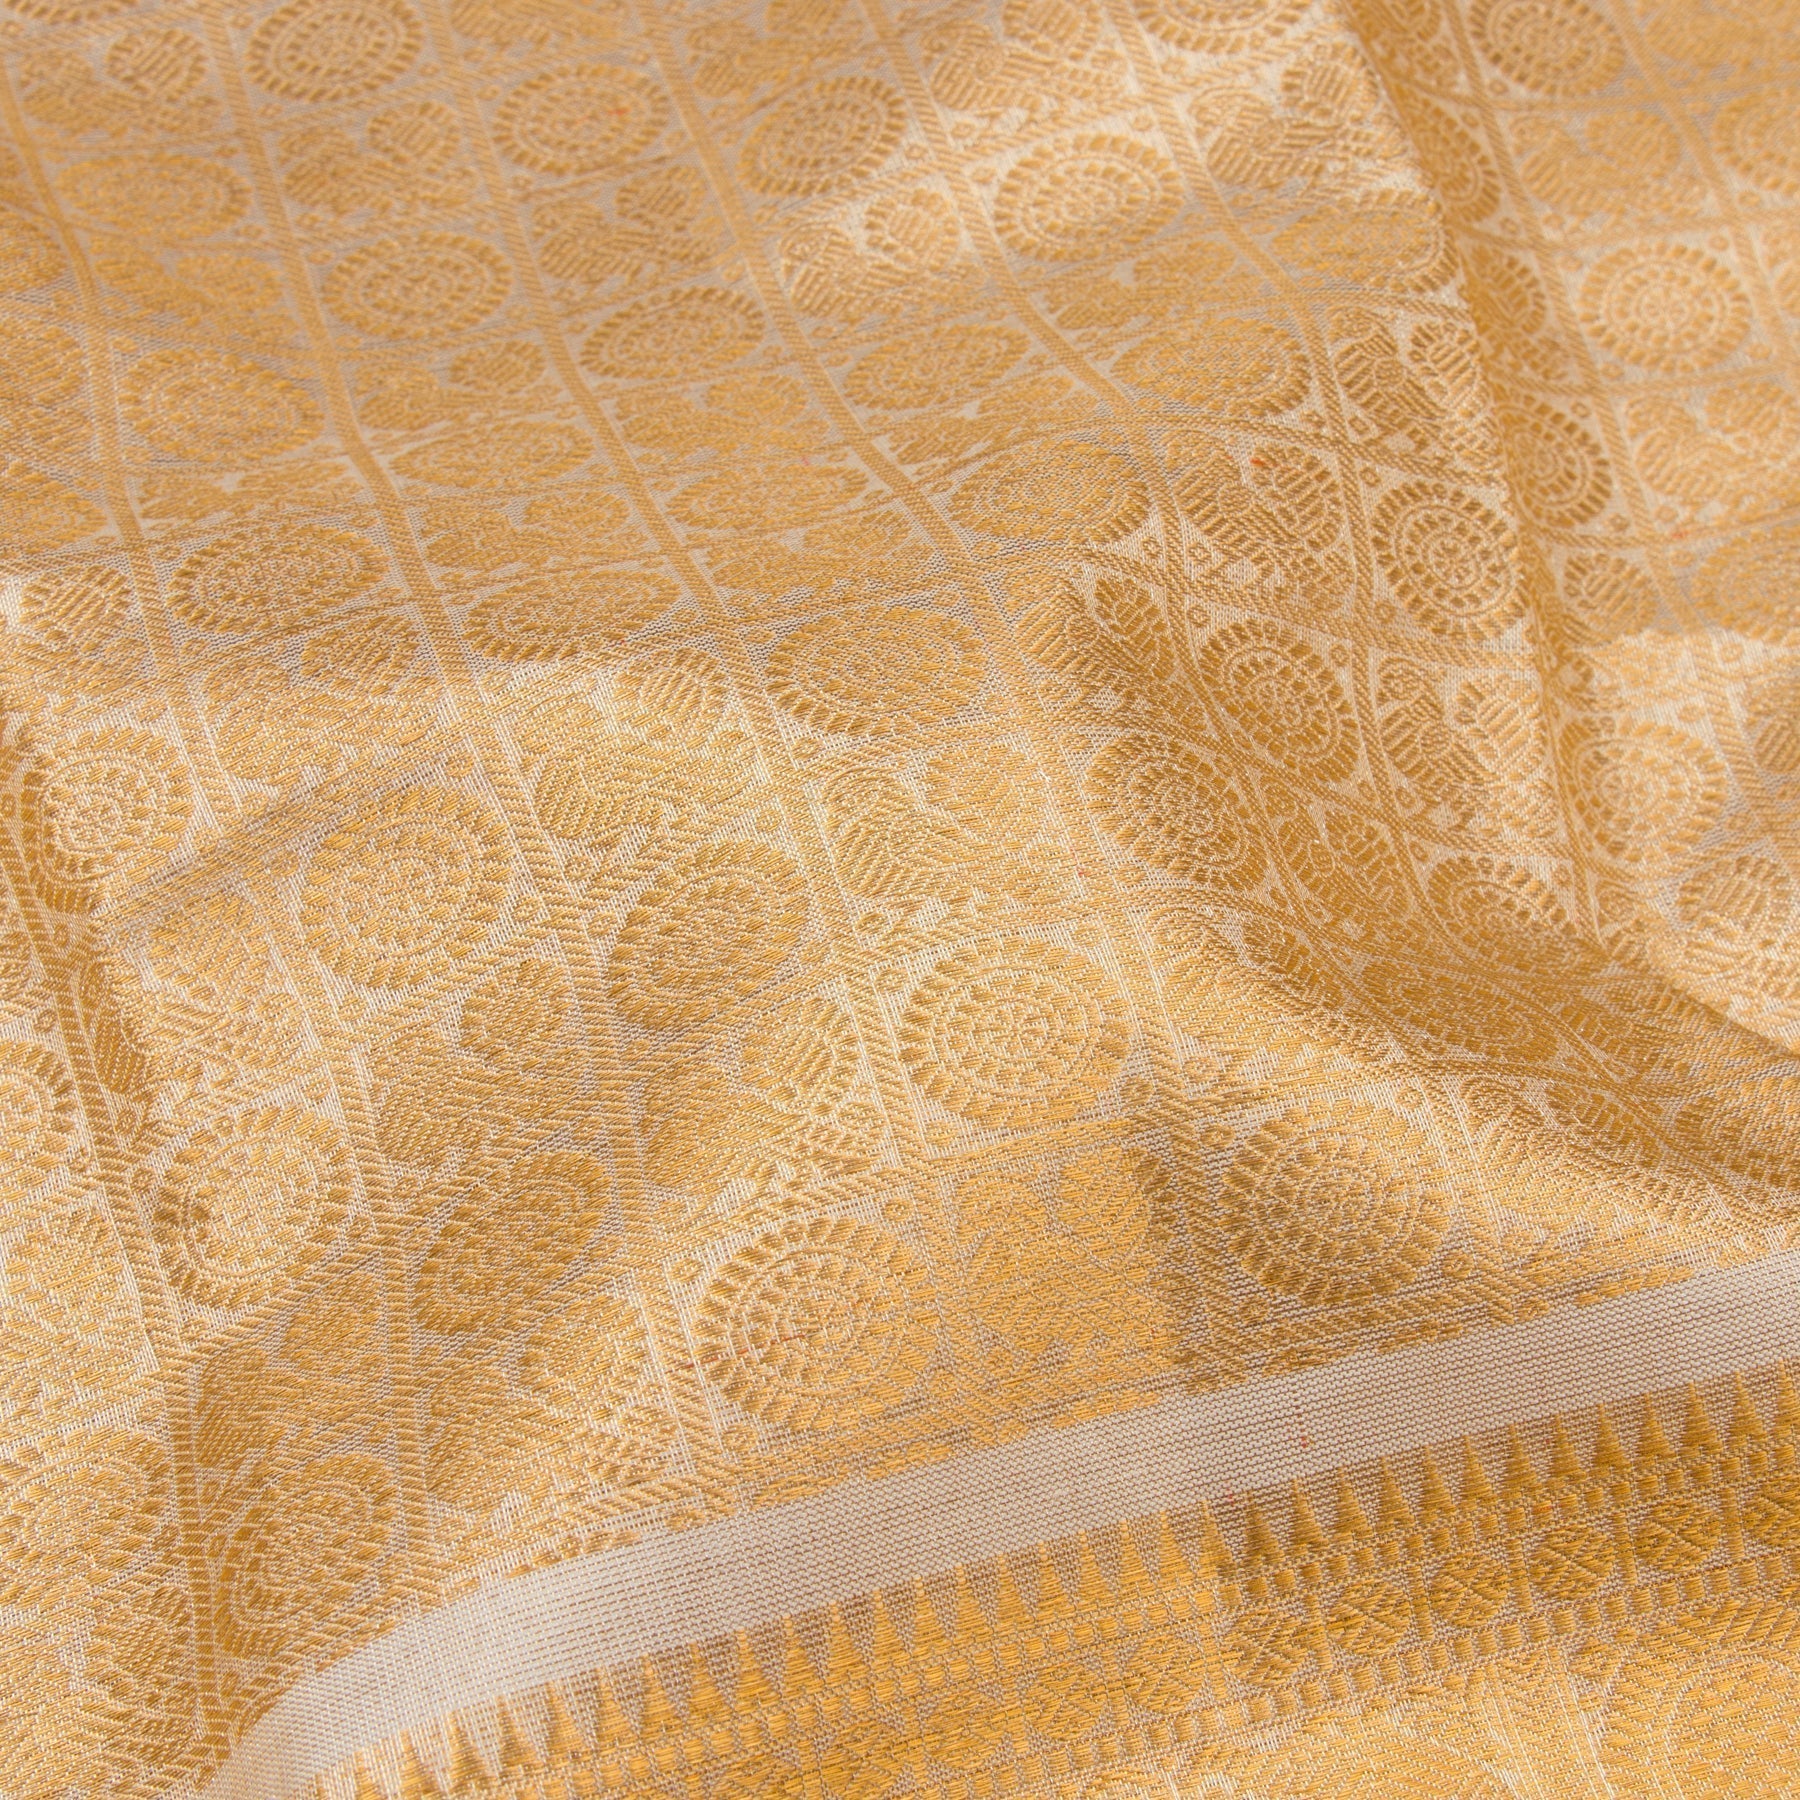 Kanakavalli Kanjivaram Silk Sari 22-110-HS001-08975 - Fabric View